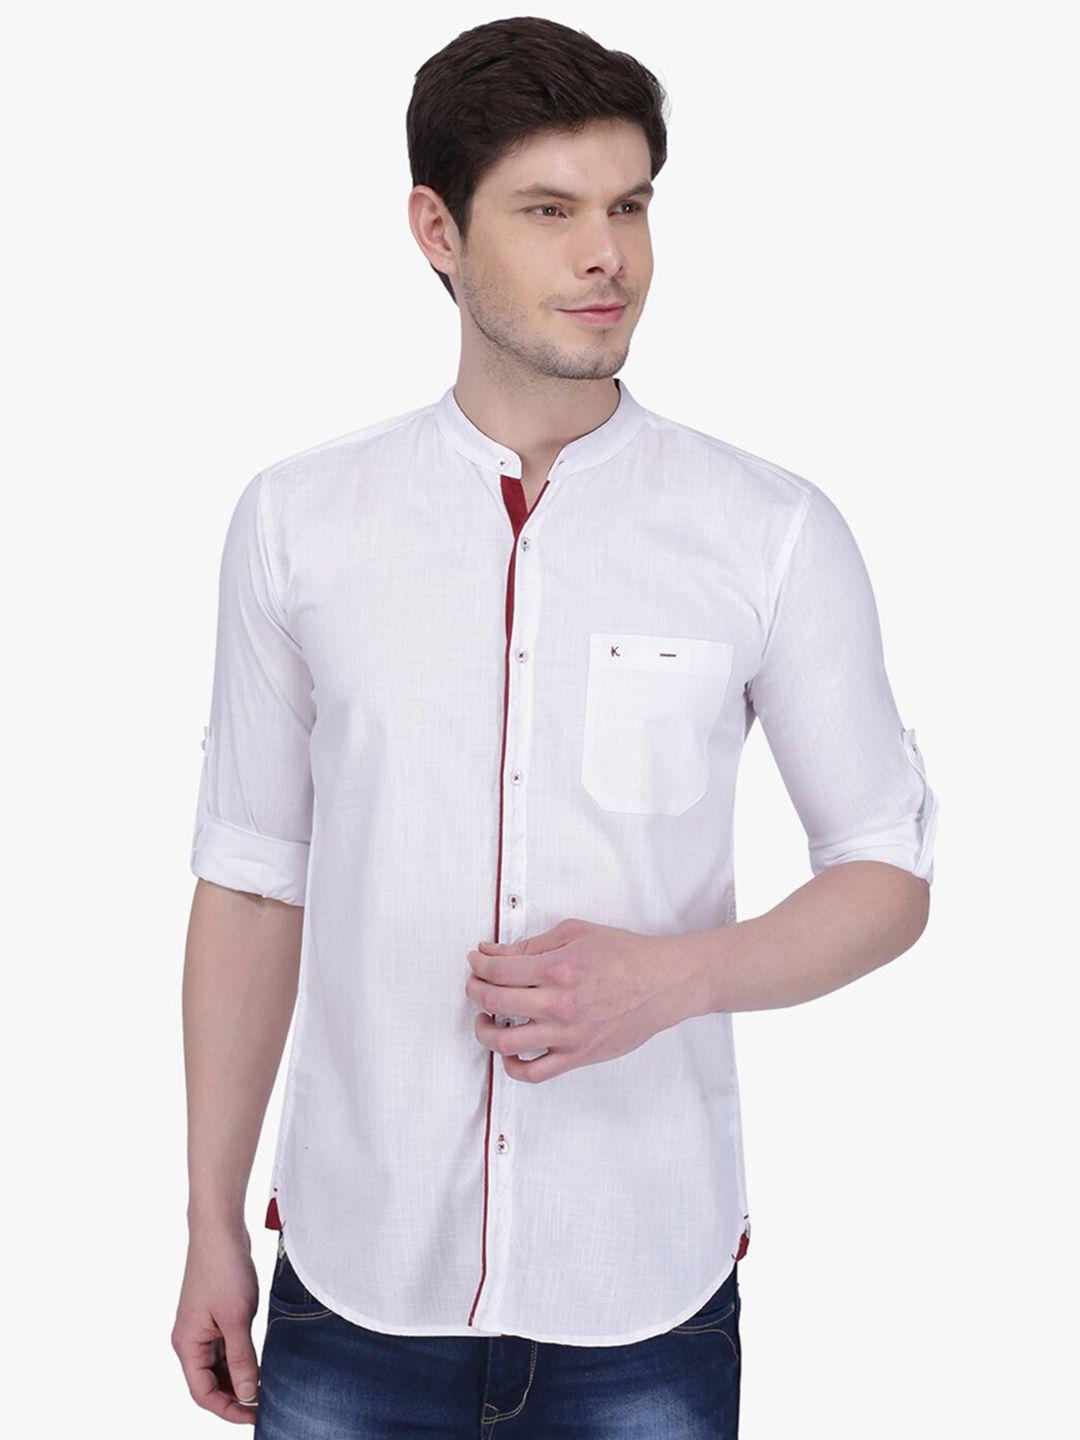 kuons avenue men slim fit casual cotton shirt